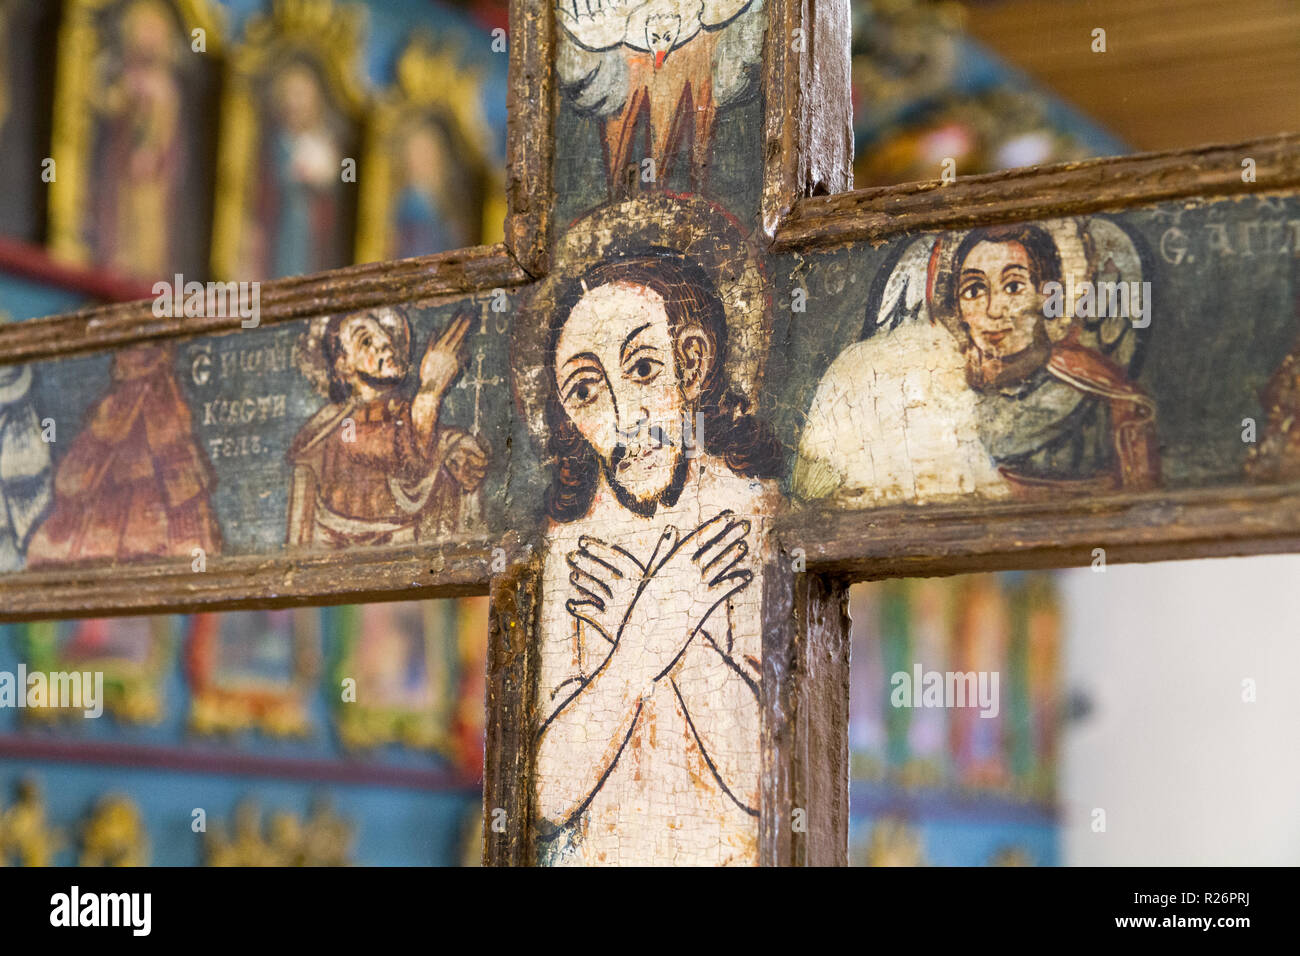 Bardejov, Slovacchia. Il 9 agosto 2018. Un'icona raffigurante crocifisso Gesù crocifisso. Da una chiesa bizantina. Attualmente in un museo di Bardejov. Foto Stock